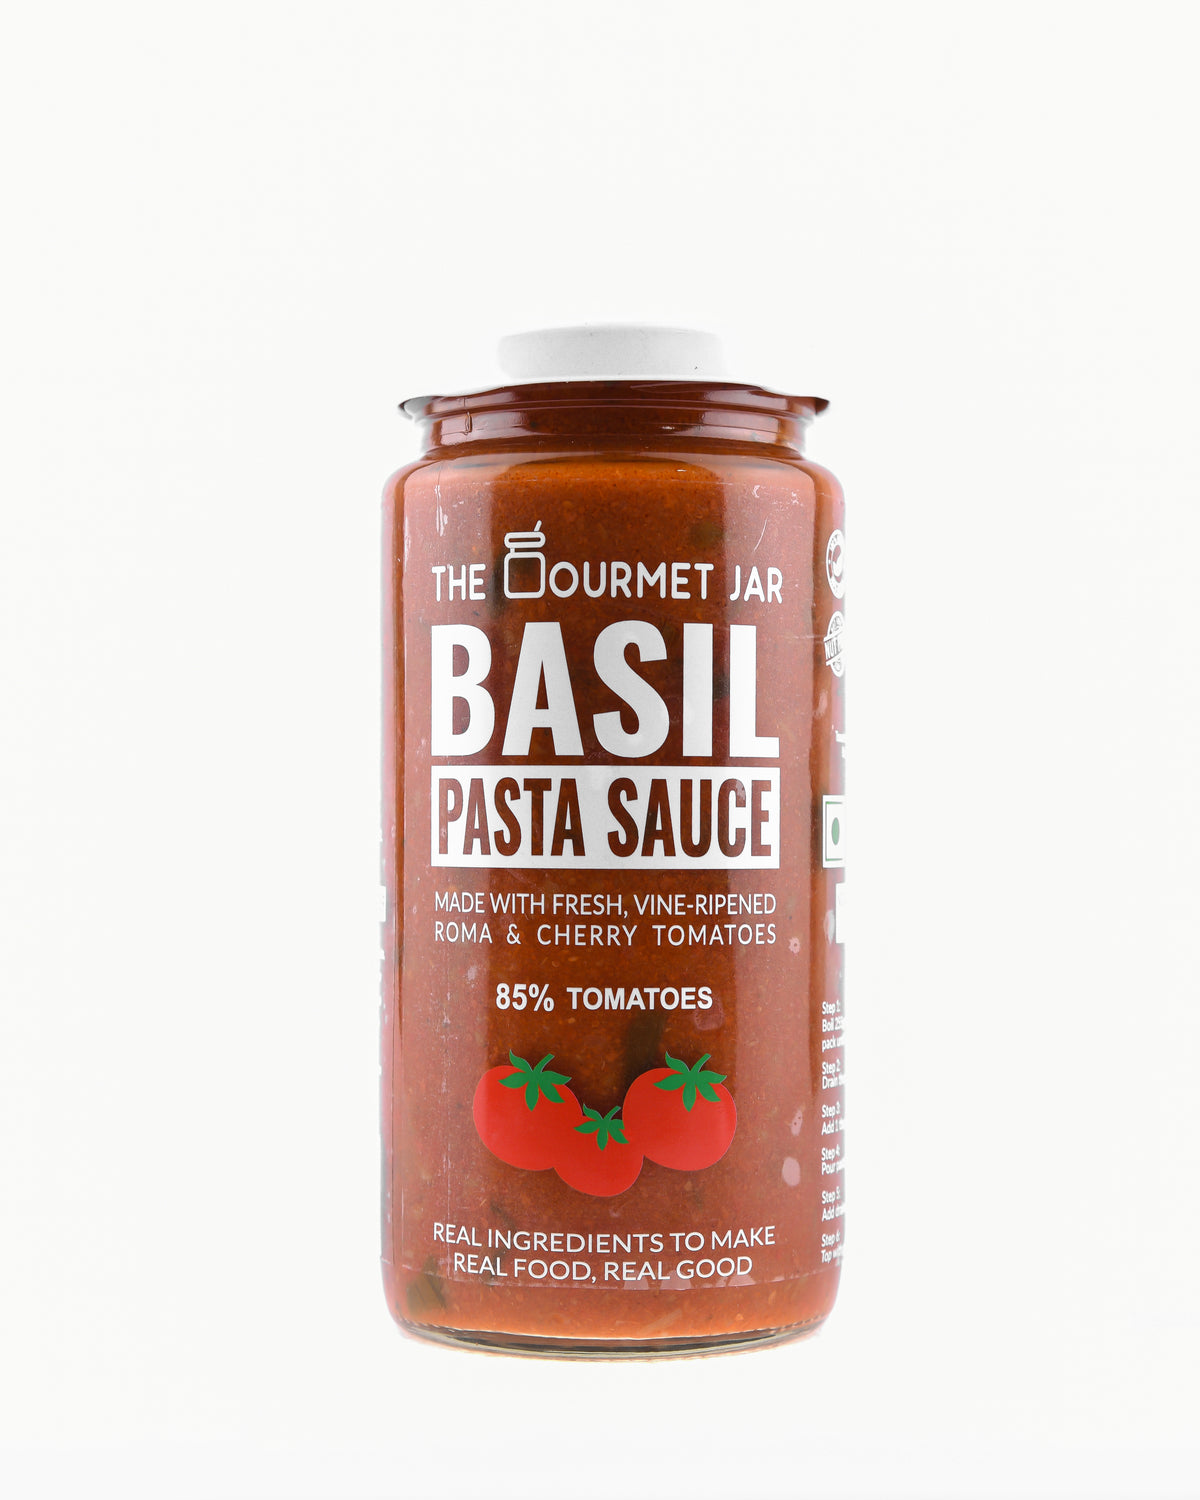 Basil Pasta Sauce